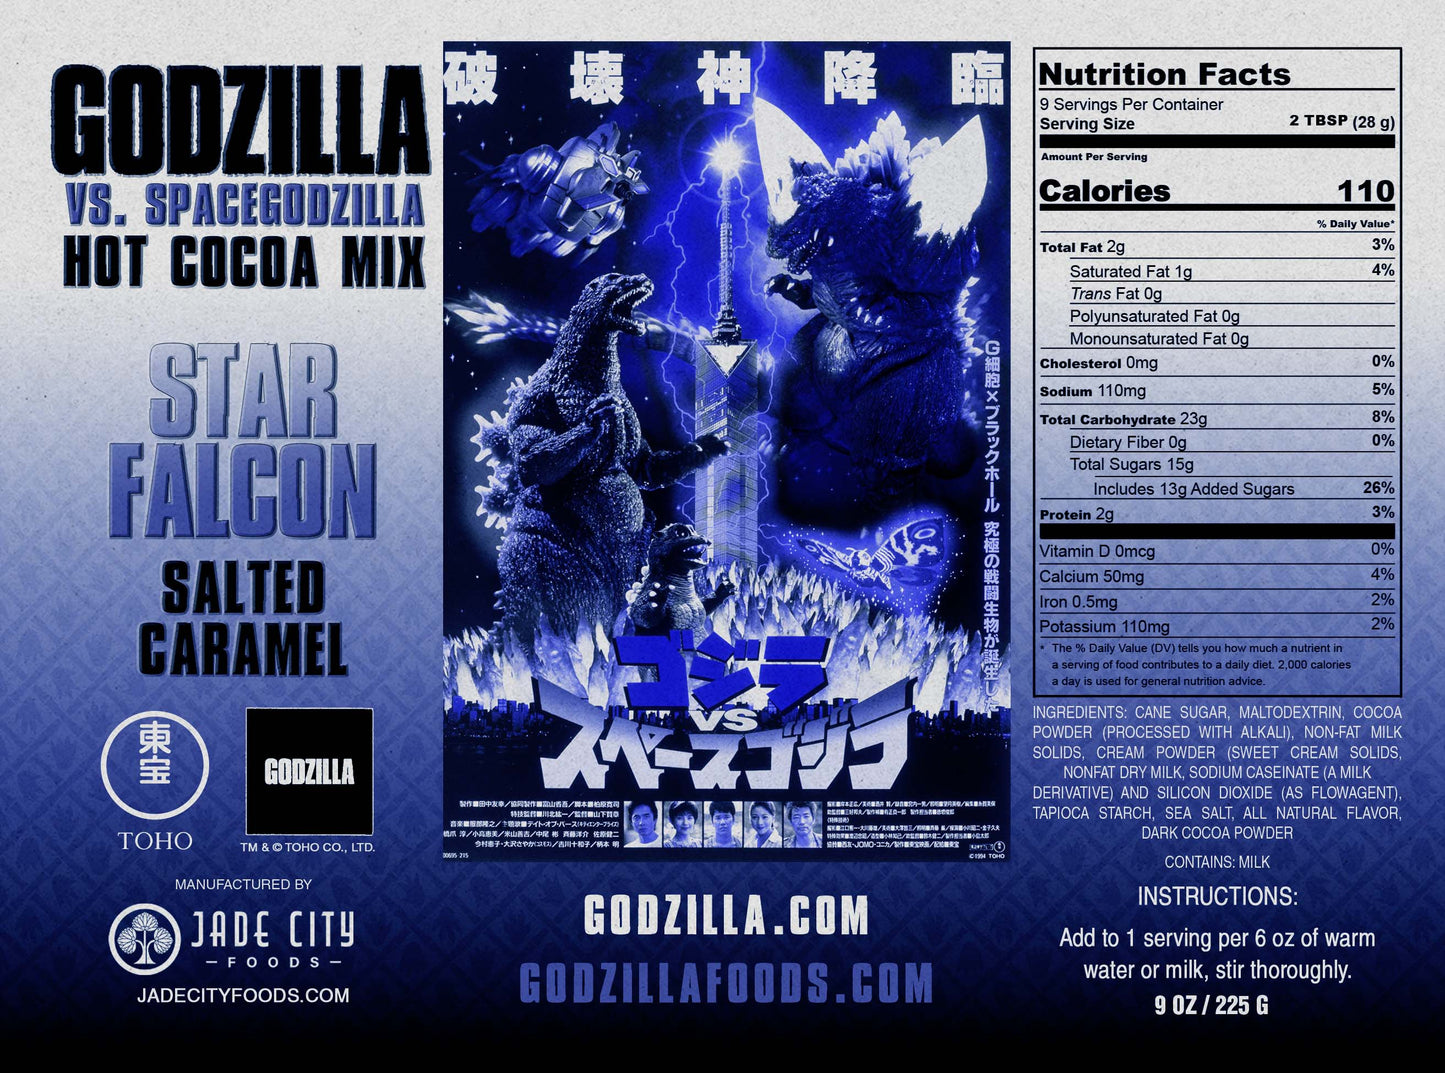 Godzilla vs. Spacegodzilla's Star Falcon Cocoa : Salted Caramel